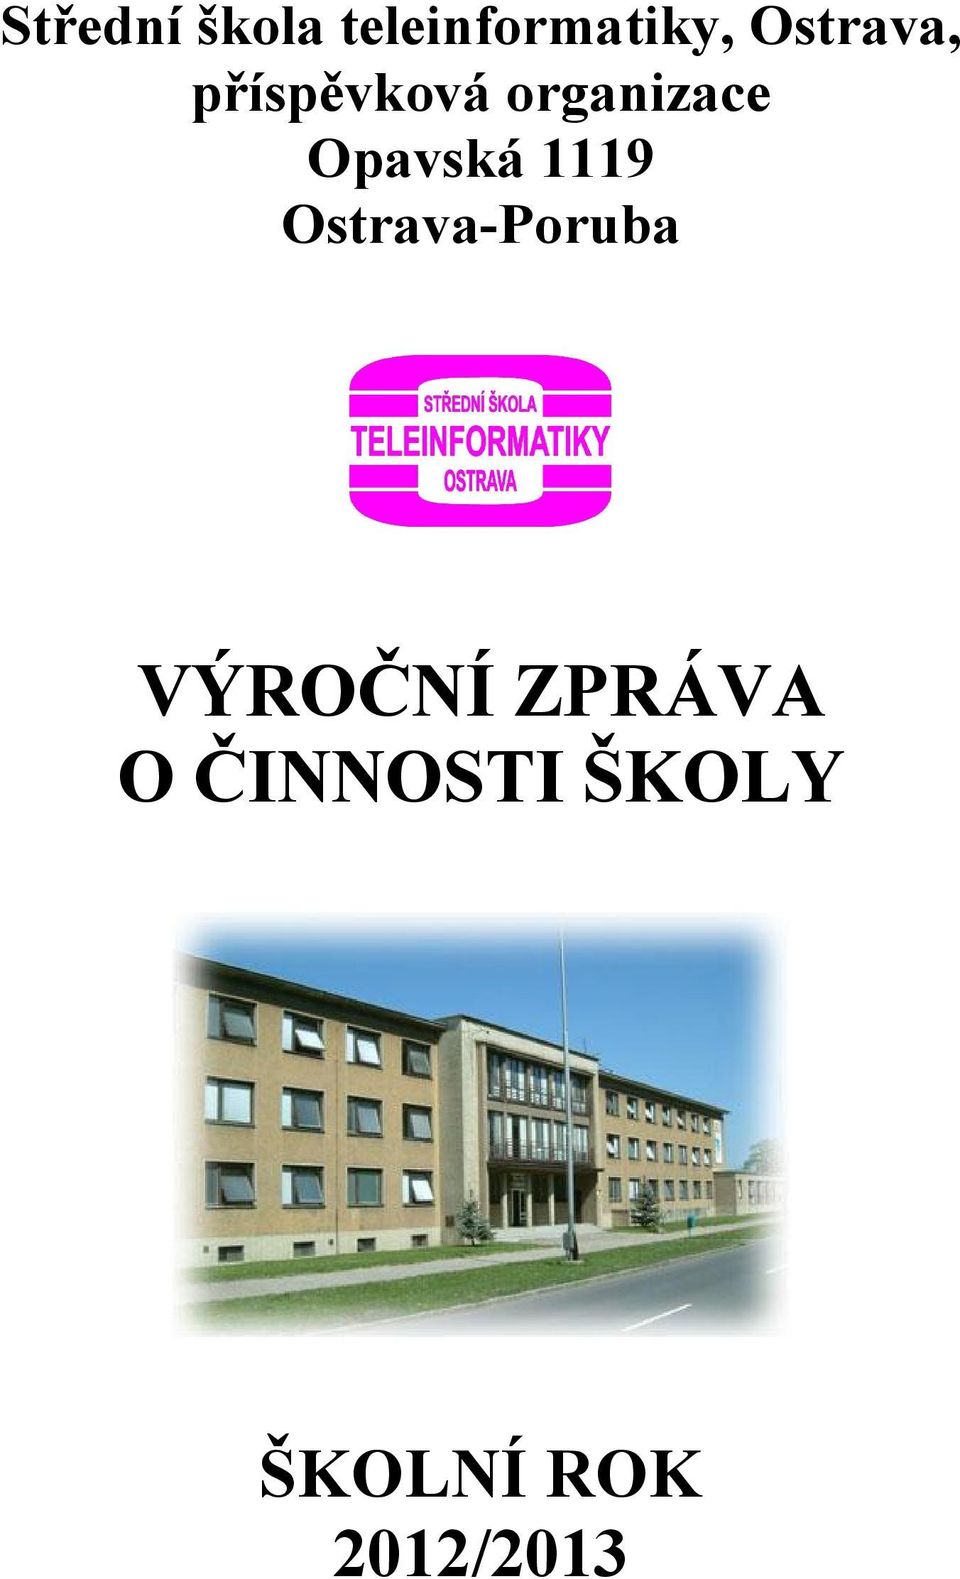 Opavská 1119 Ostrava-Poruba VÝROČNÍ